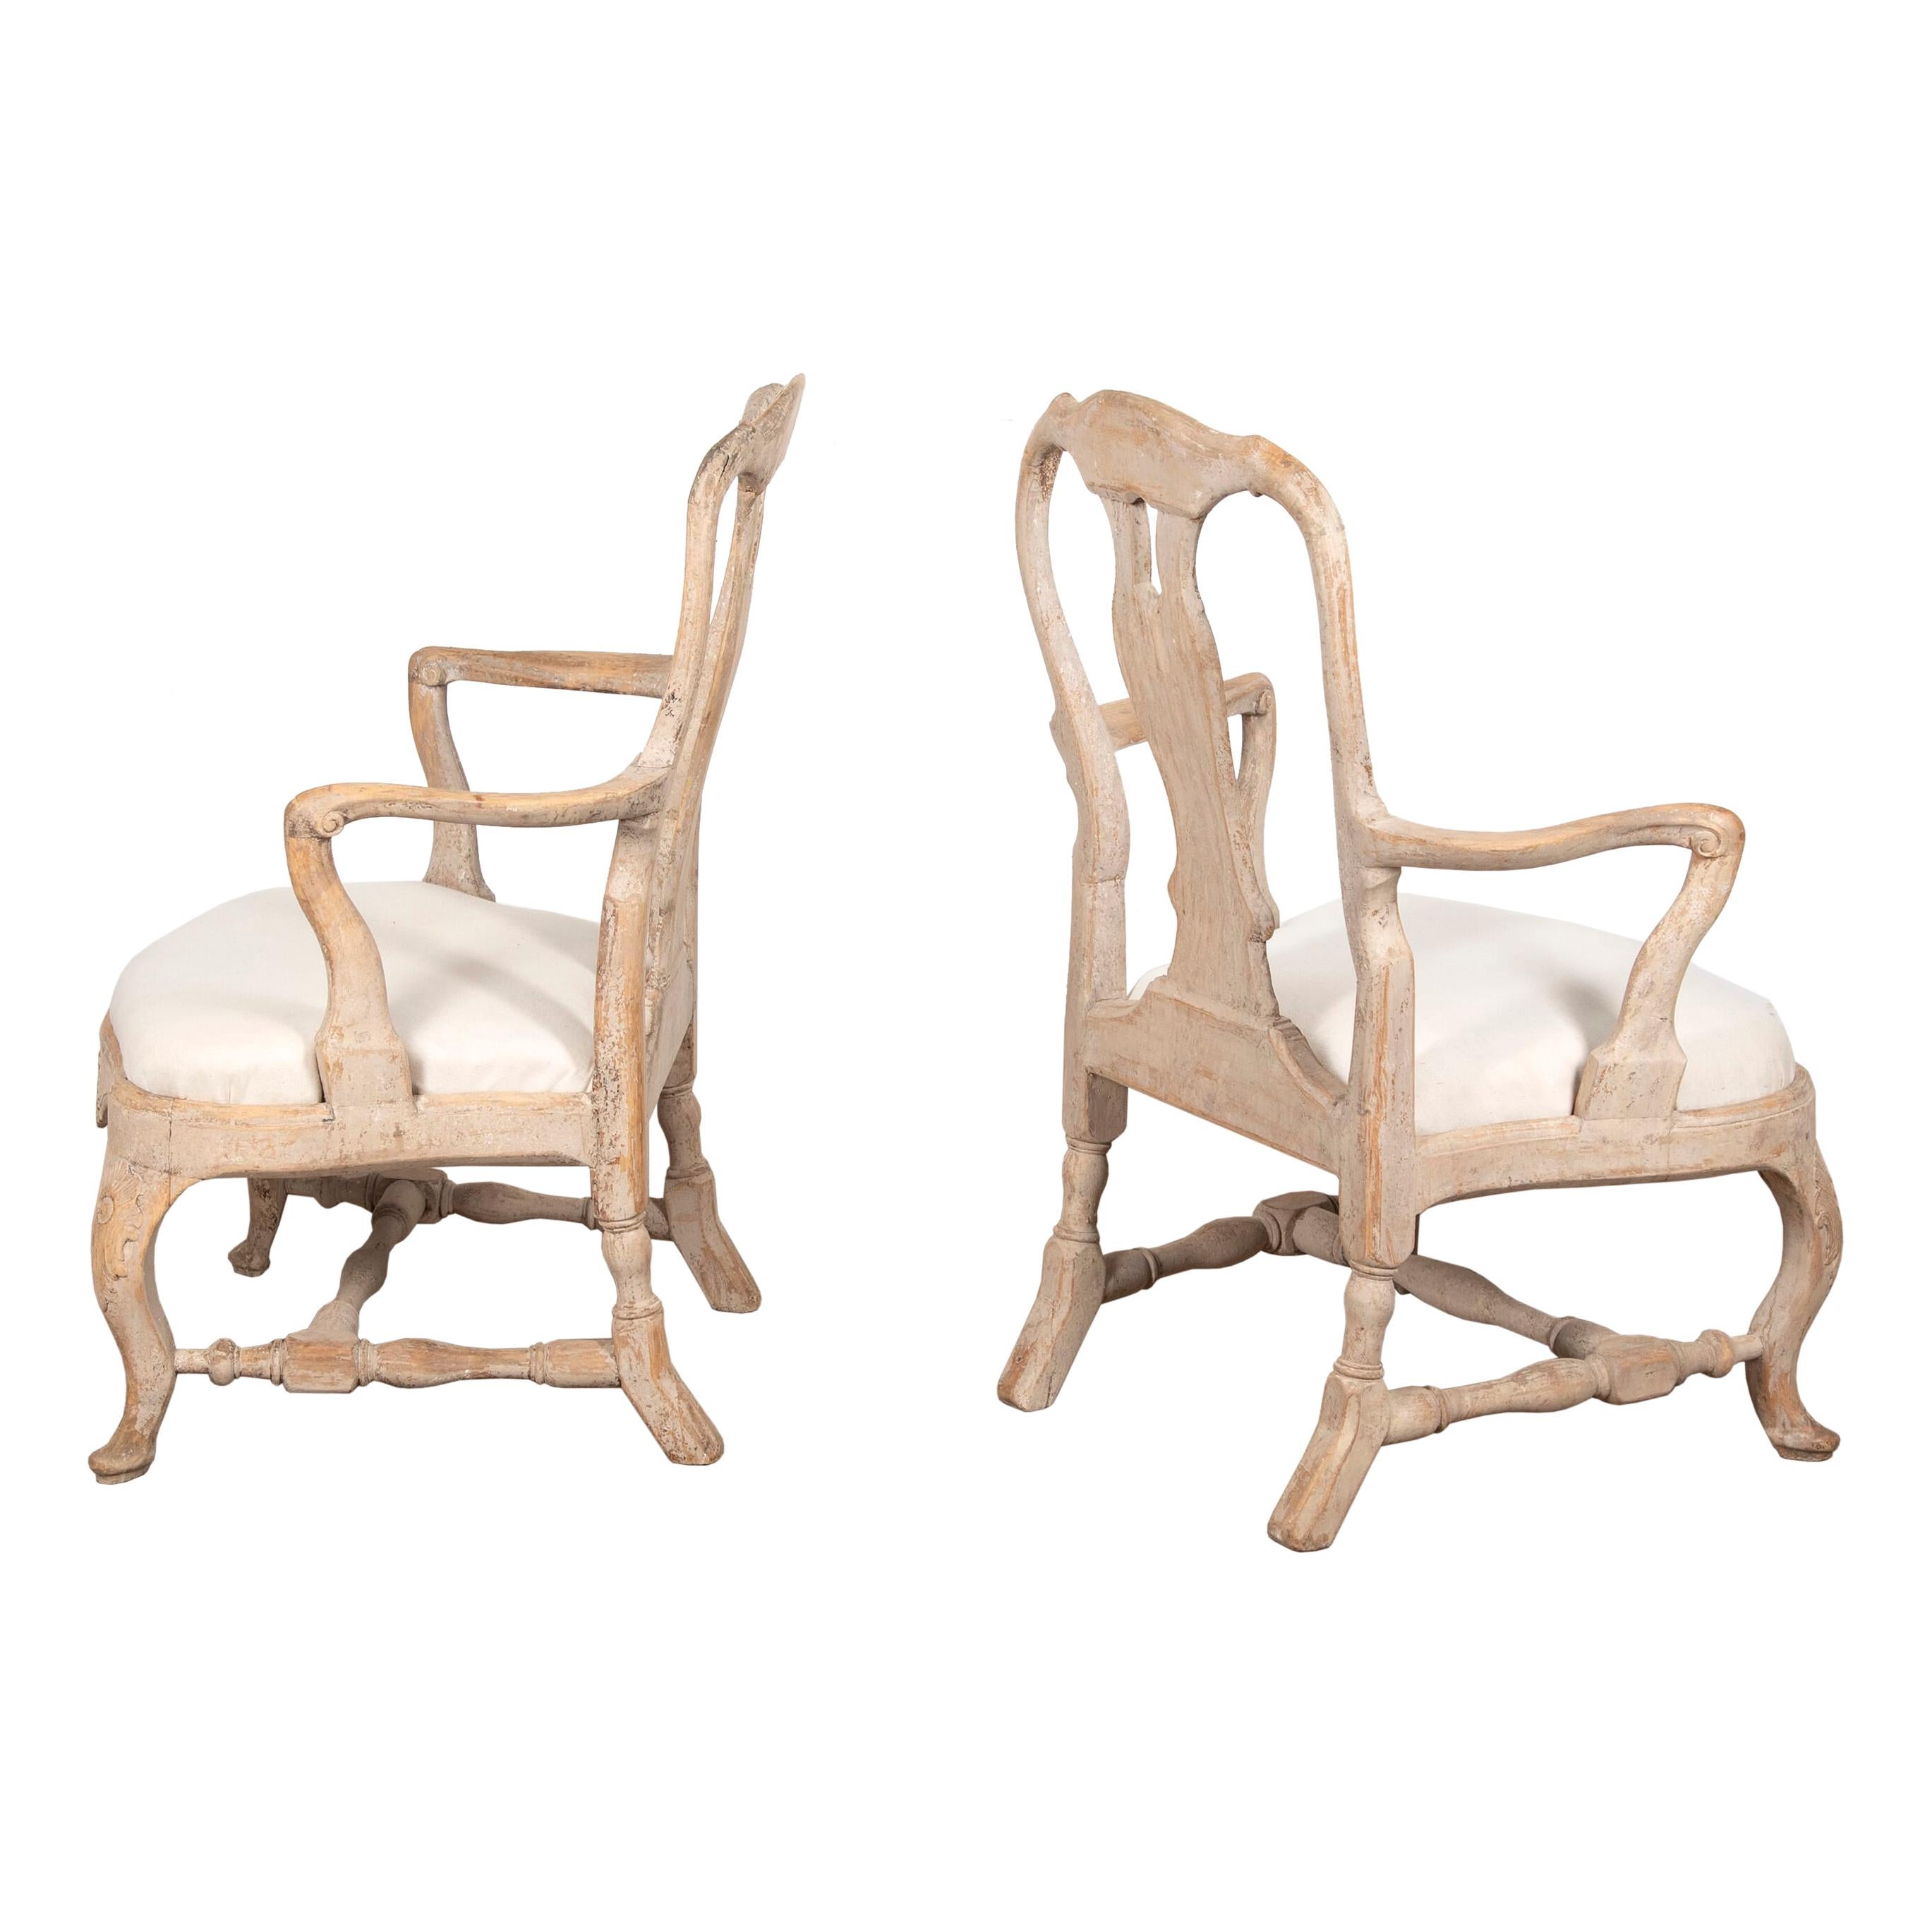 Paar Stockholmer Sessel aus dem 18. Jahrhundert mit geschnitzten Rückenlehnen.
Mit tiefen Sitzen, Cabrio-Beinen und schön gepolsterten belgischen Leinensitzen. Neu gestrichen in typisch weißer Farbe.